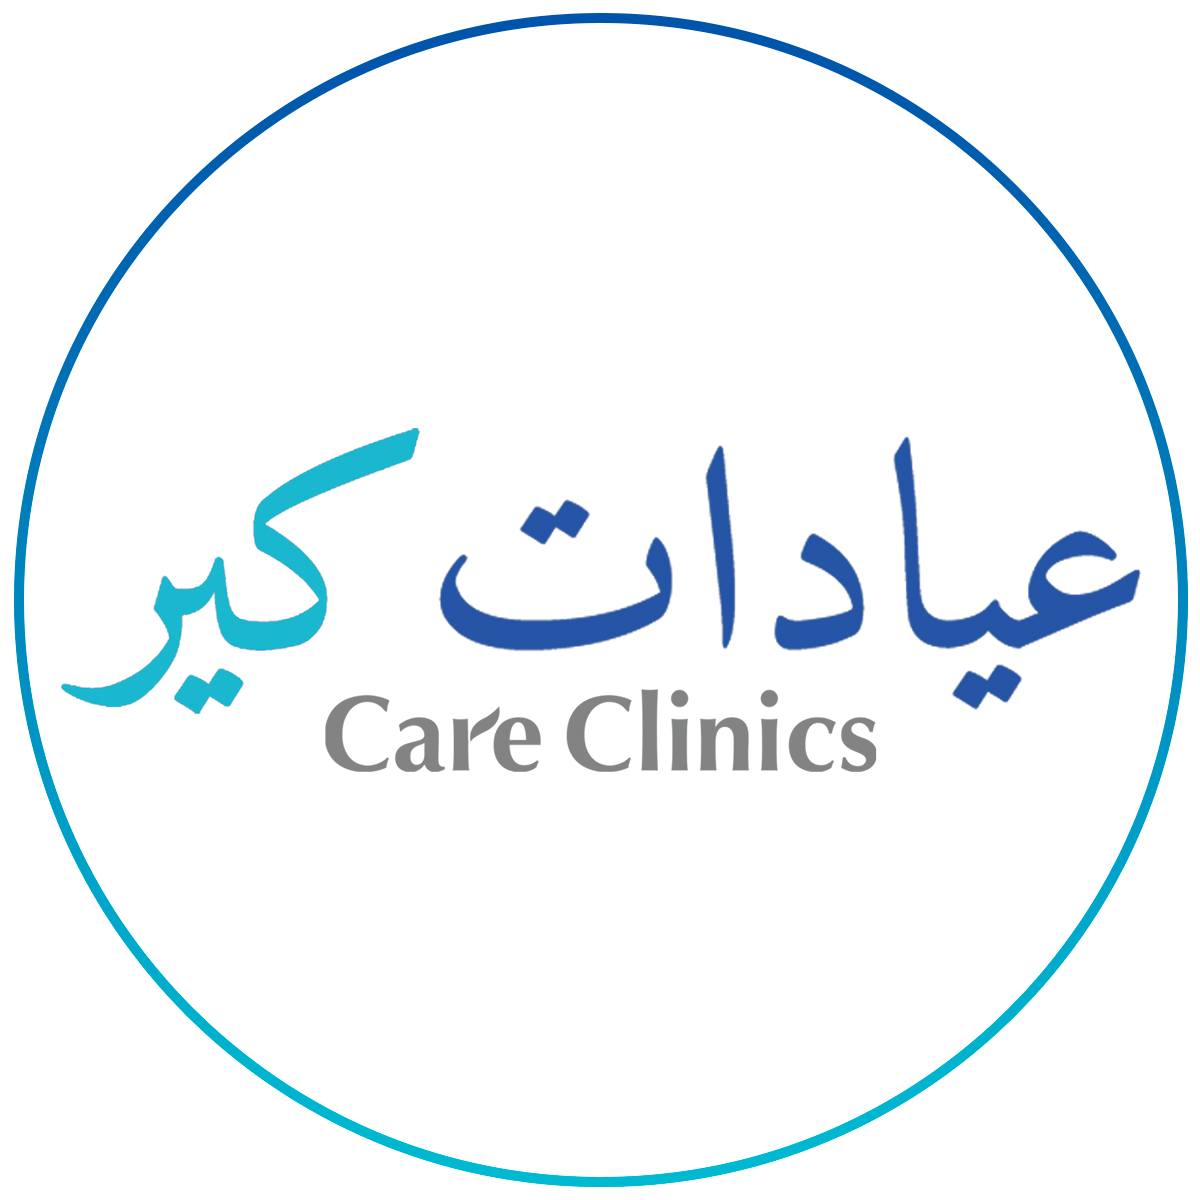 The Care Clinics